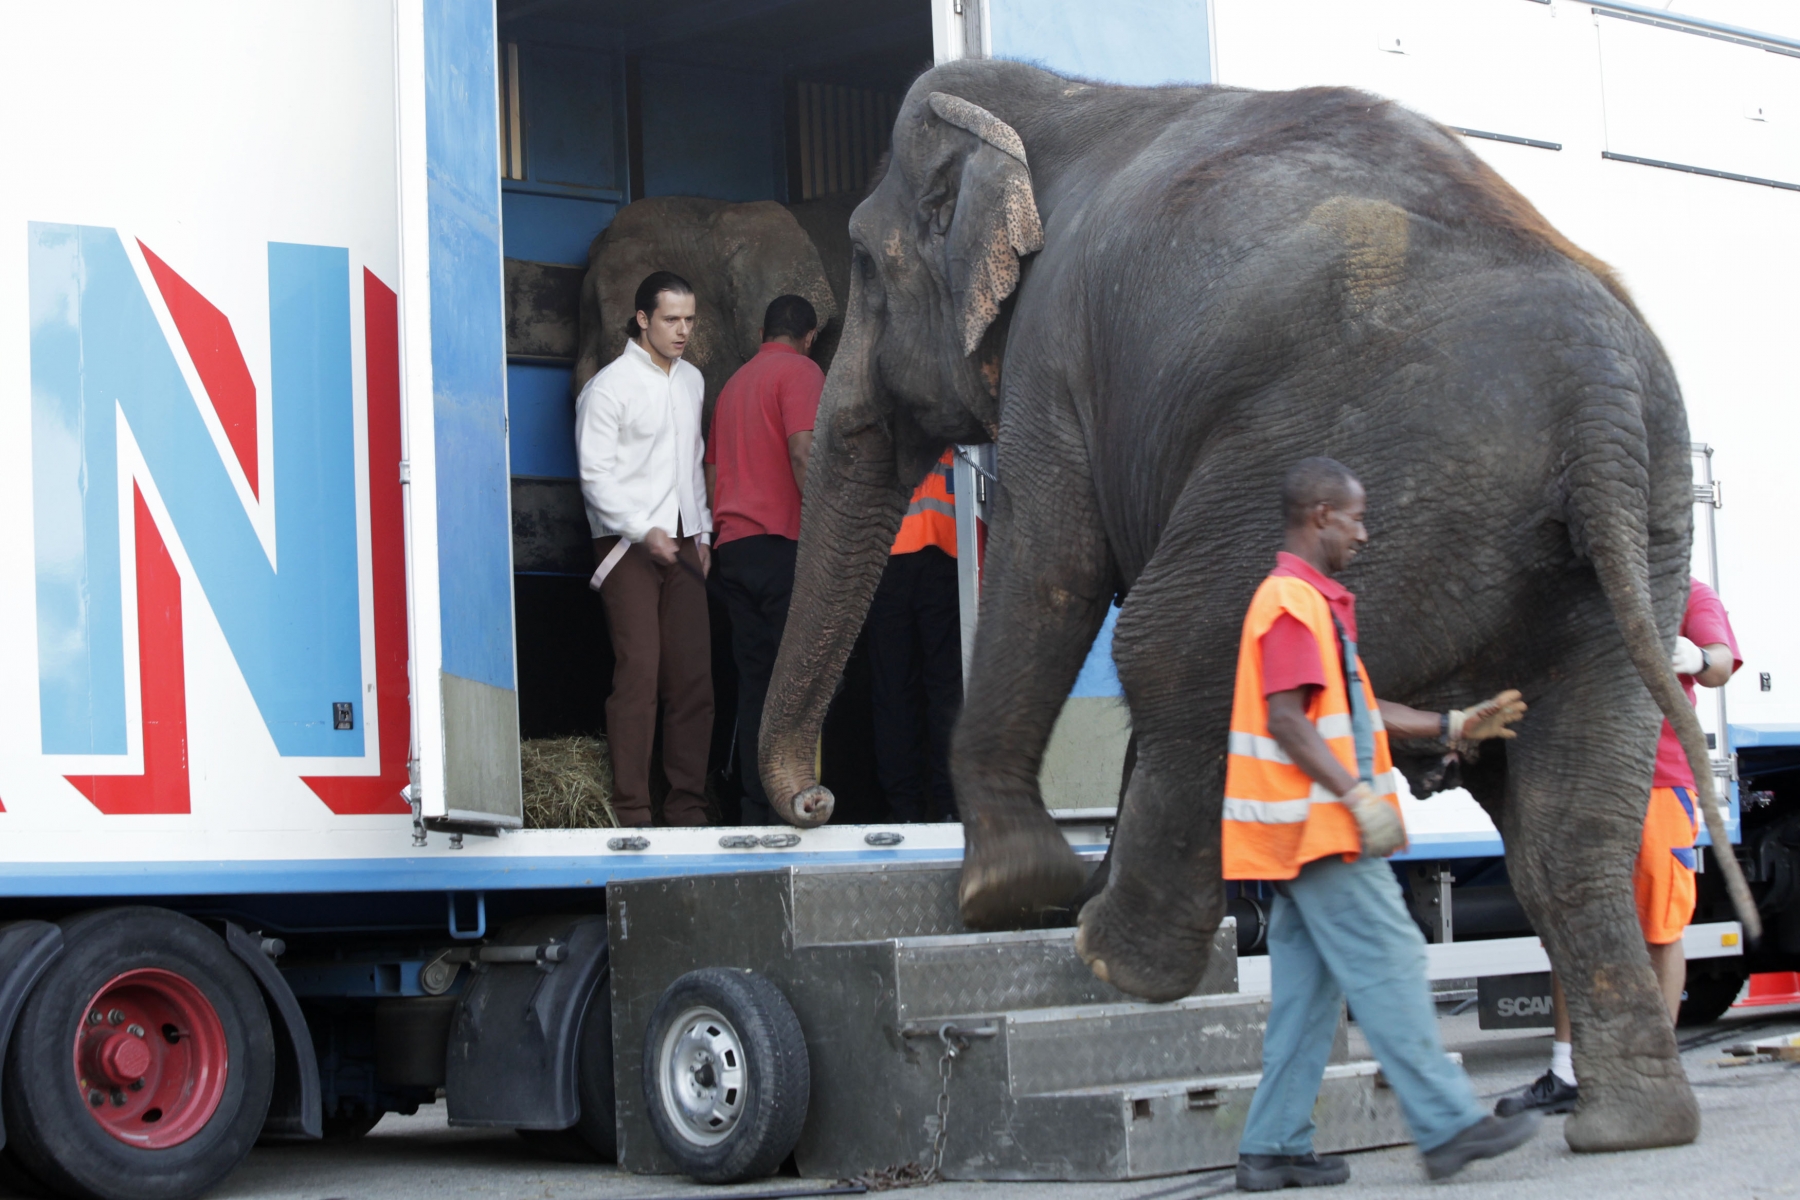 Franco Knie junior, le dresseur d'éléphants, emmène les pachidermes dans leur camion juste après leur numéro.